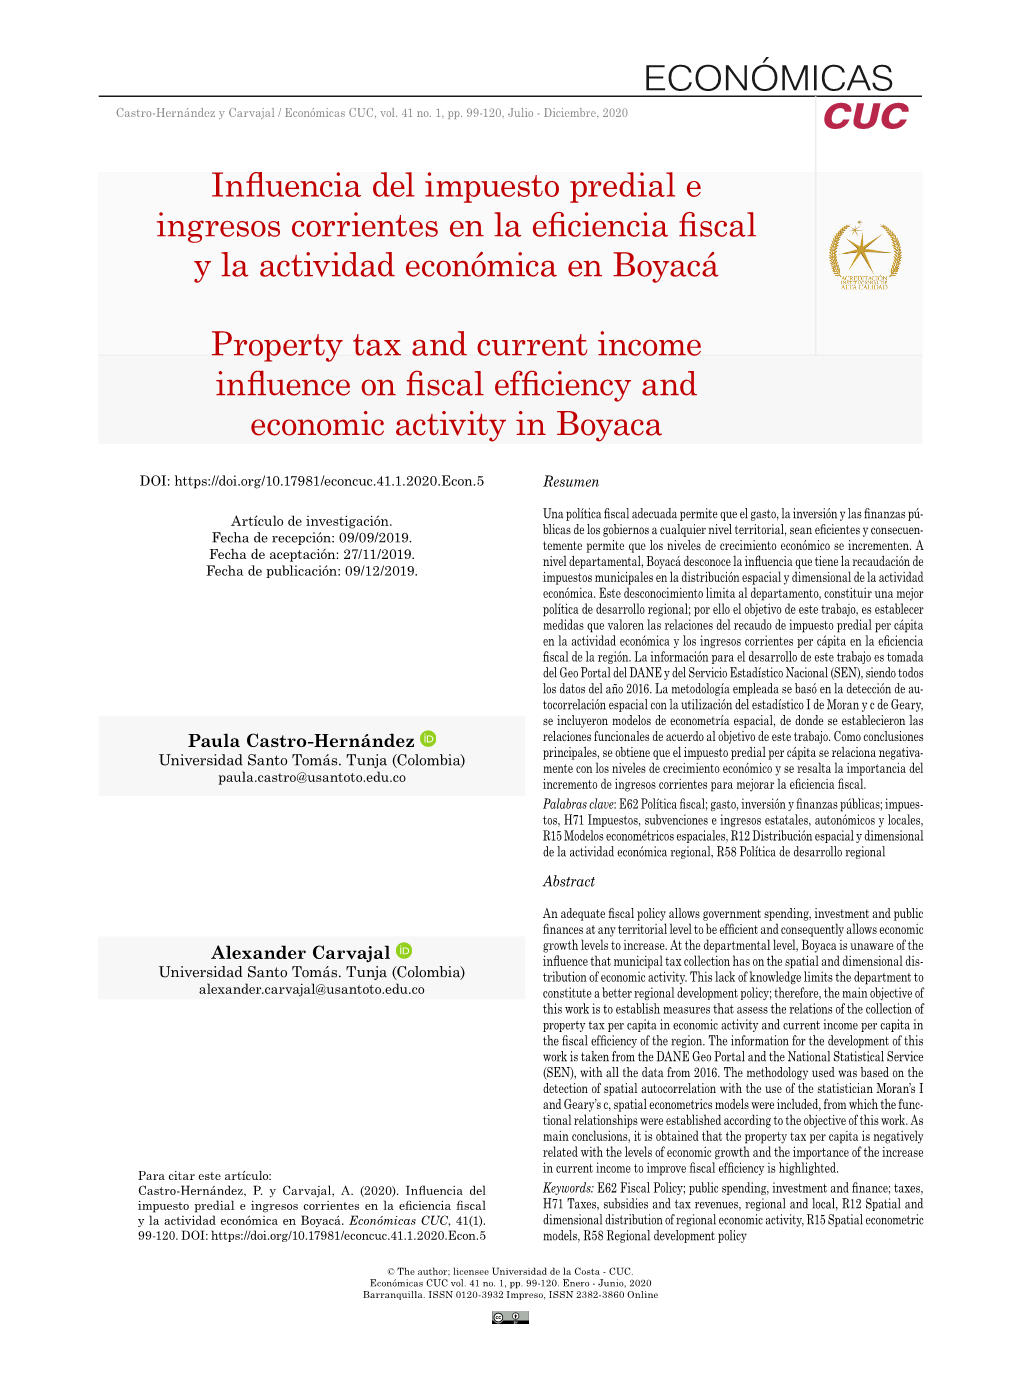 Influencia Del Impuesto Predial E Ingresos Corrientes En La Eficiencia Fiscal Y La Actividad Económica En Boyacá